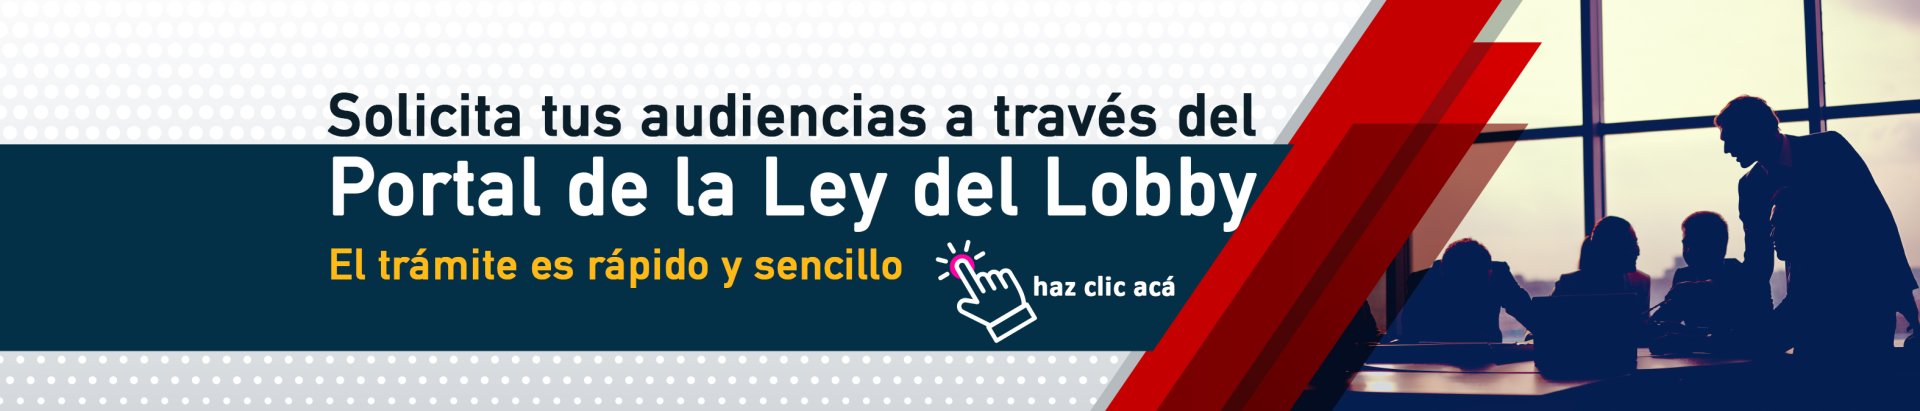 Ley del Loby - Gobierno Regional de Antofagasta